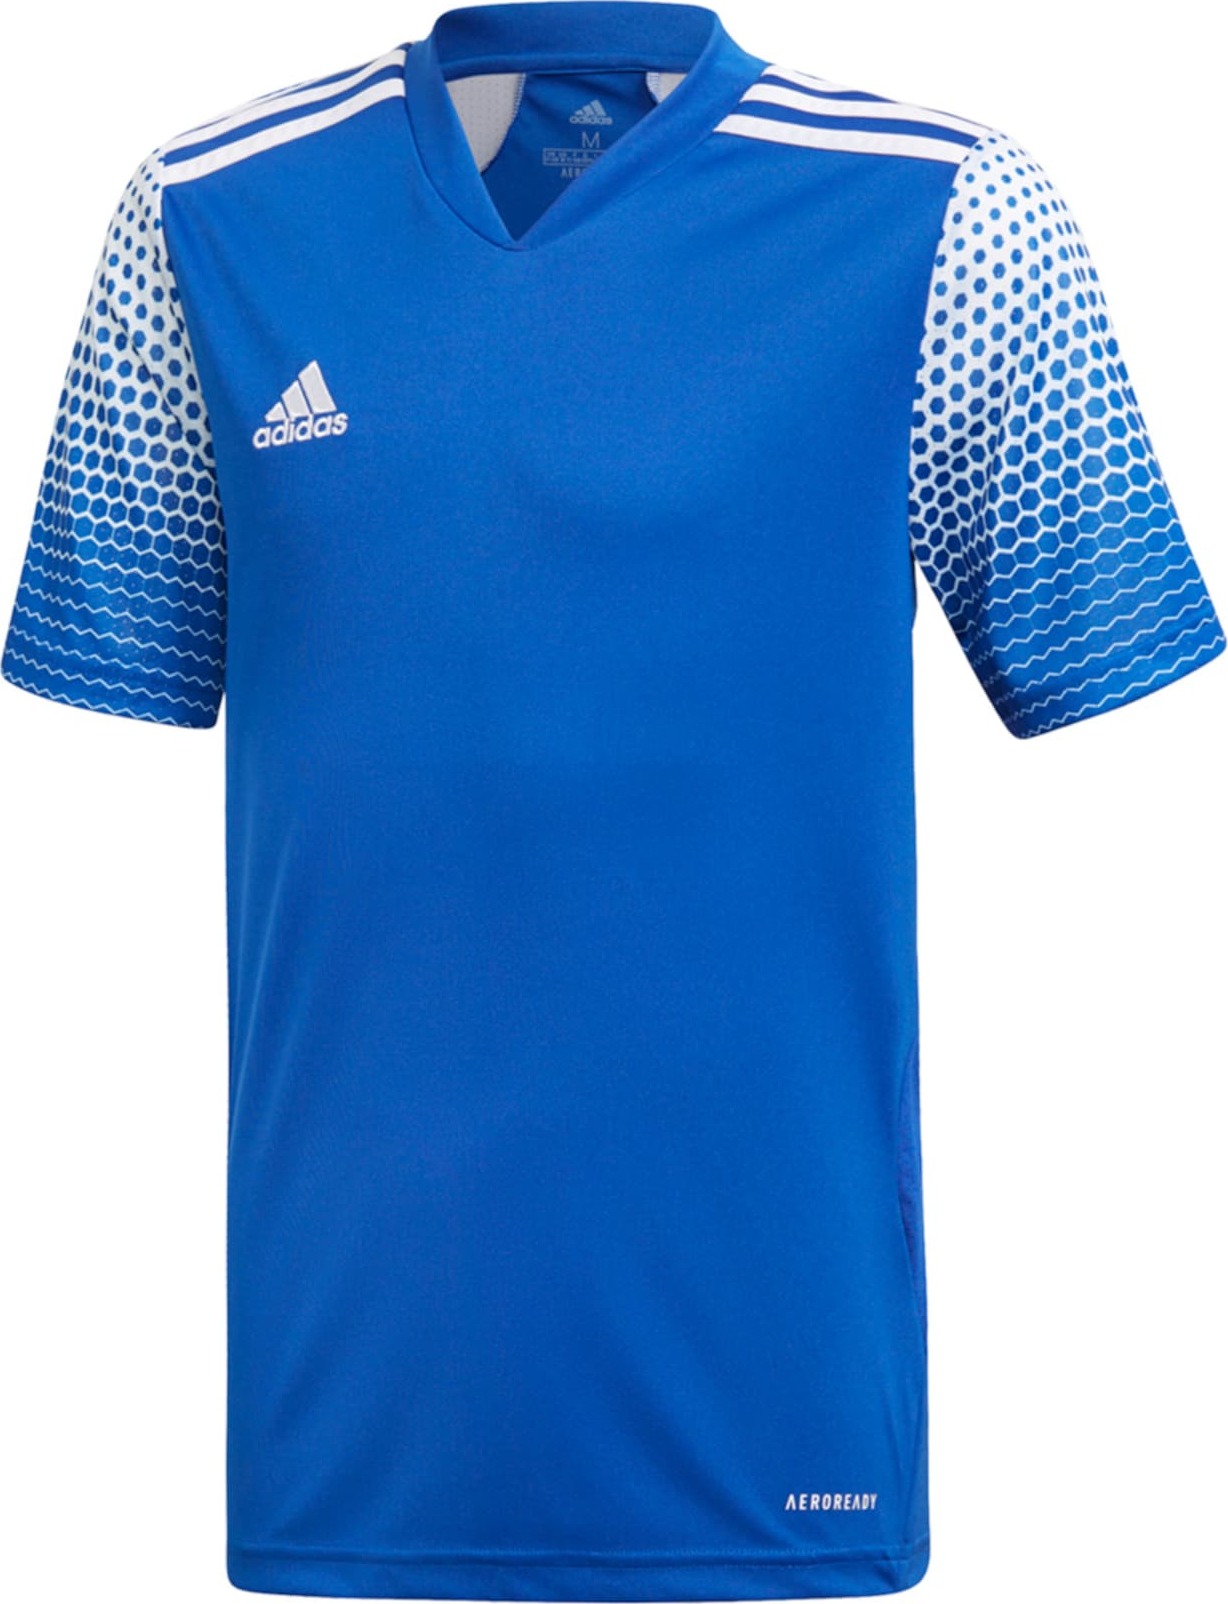 ADIDAS PERFORMANCE Funkční tričko 'Regista' královská modrá / bílá